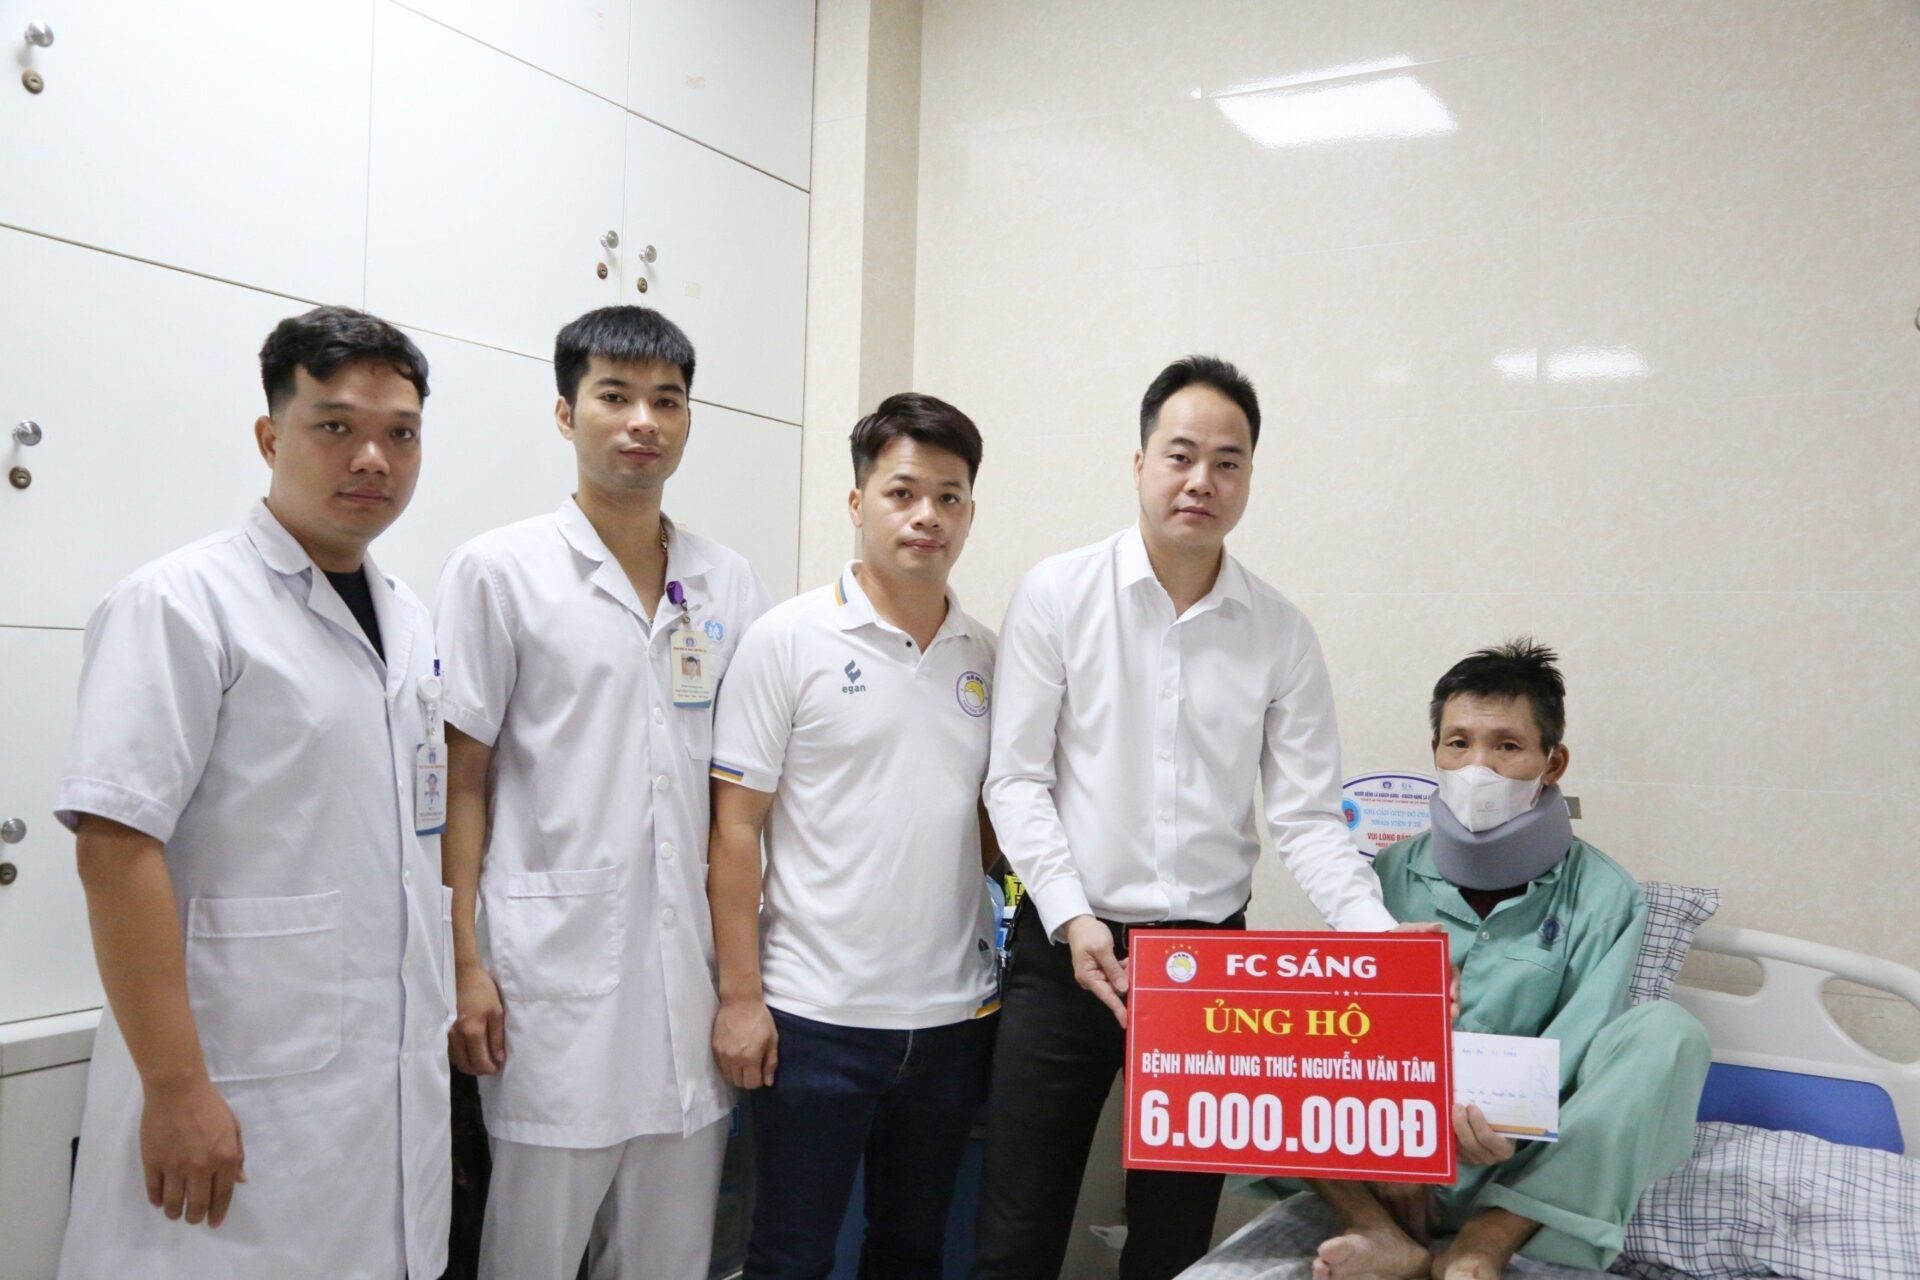 CLB FC Sáng Phú Thọ trao tiền hỗ trợ cho người bệnh khó khăn